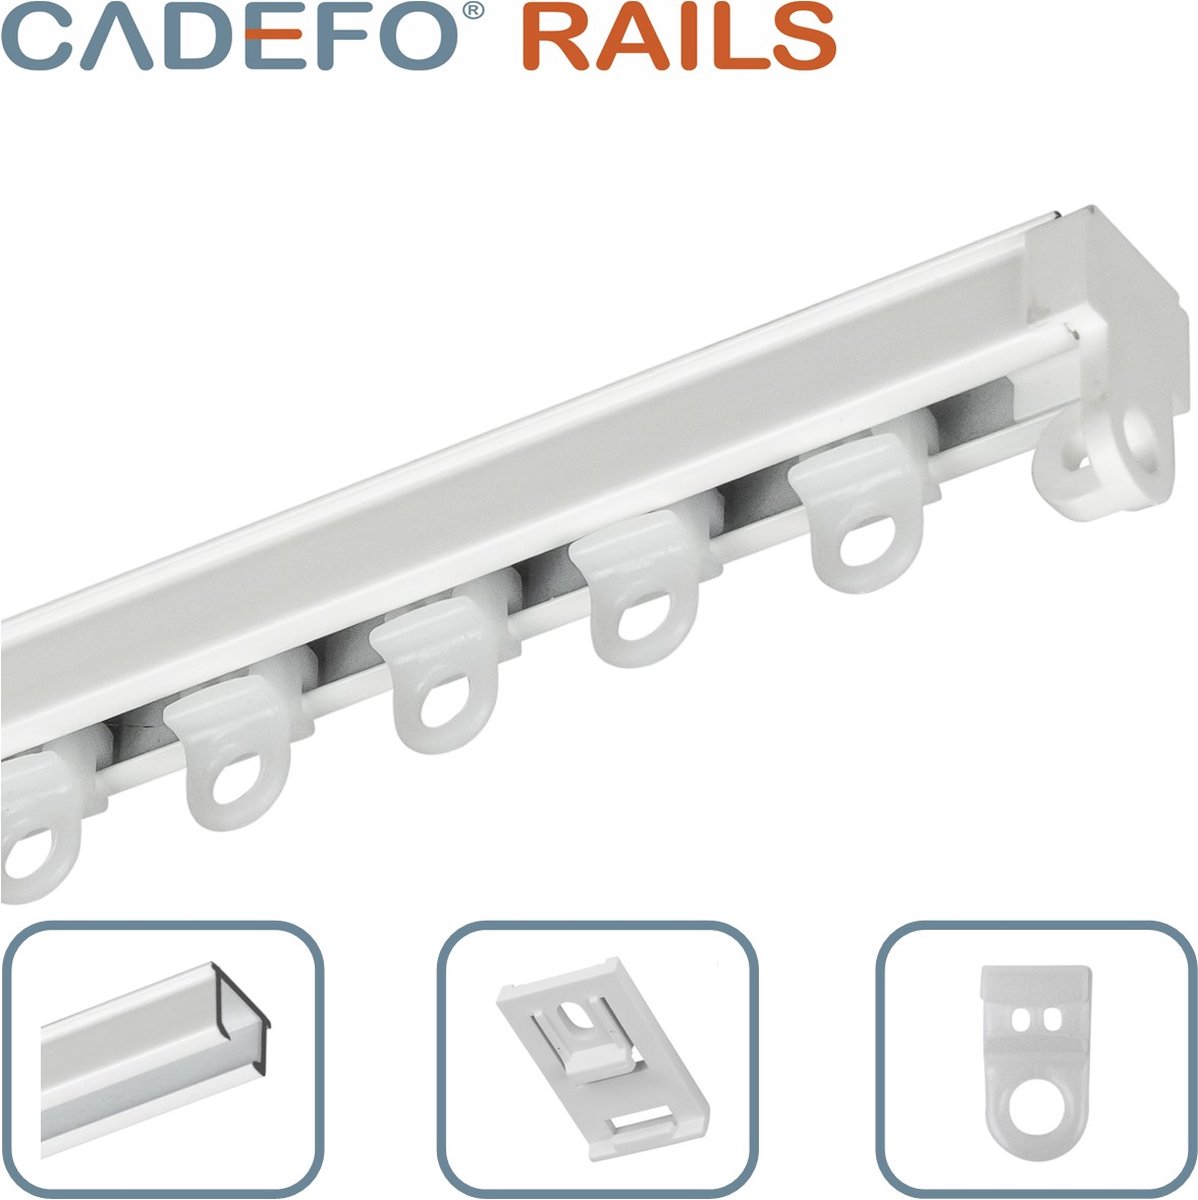 CADEFO RAILS (251 - 300 cm) Gordijnrails - Compleet op maat! - UIT 1 STUK - Leverbaar tot 6 meter - Plafondbevestiging - Lengte 297 cm